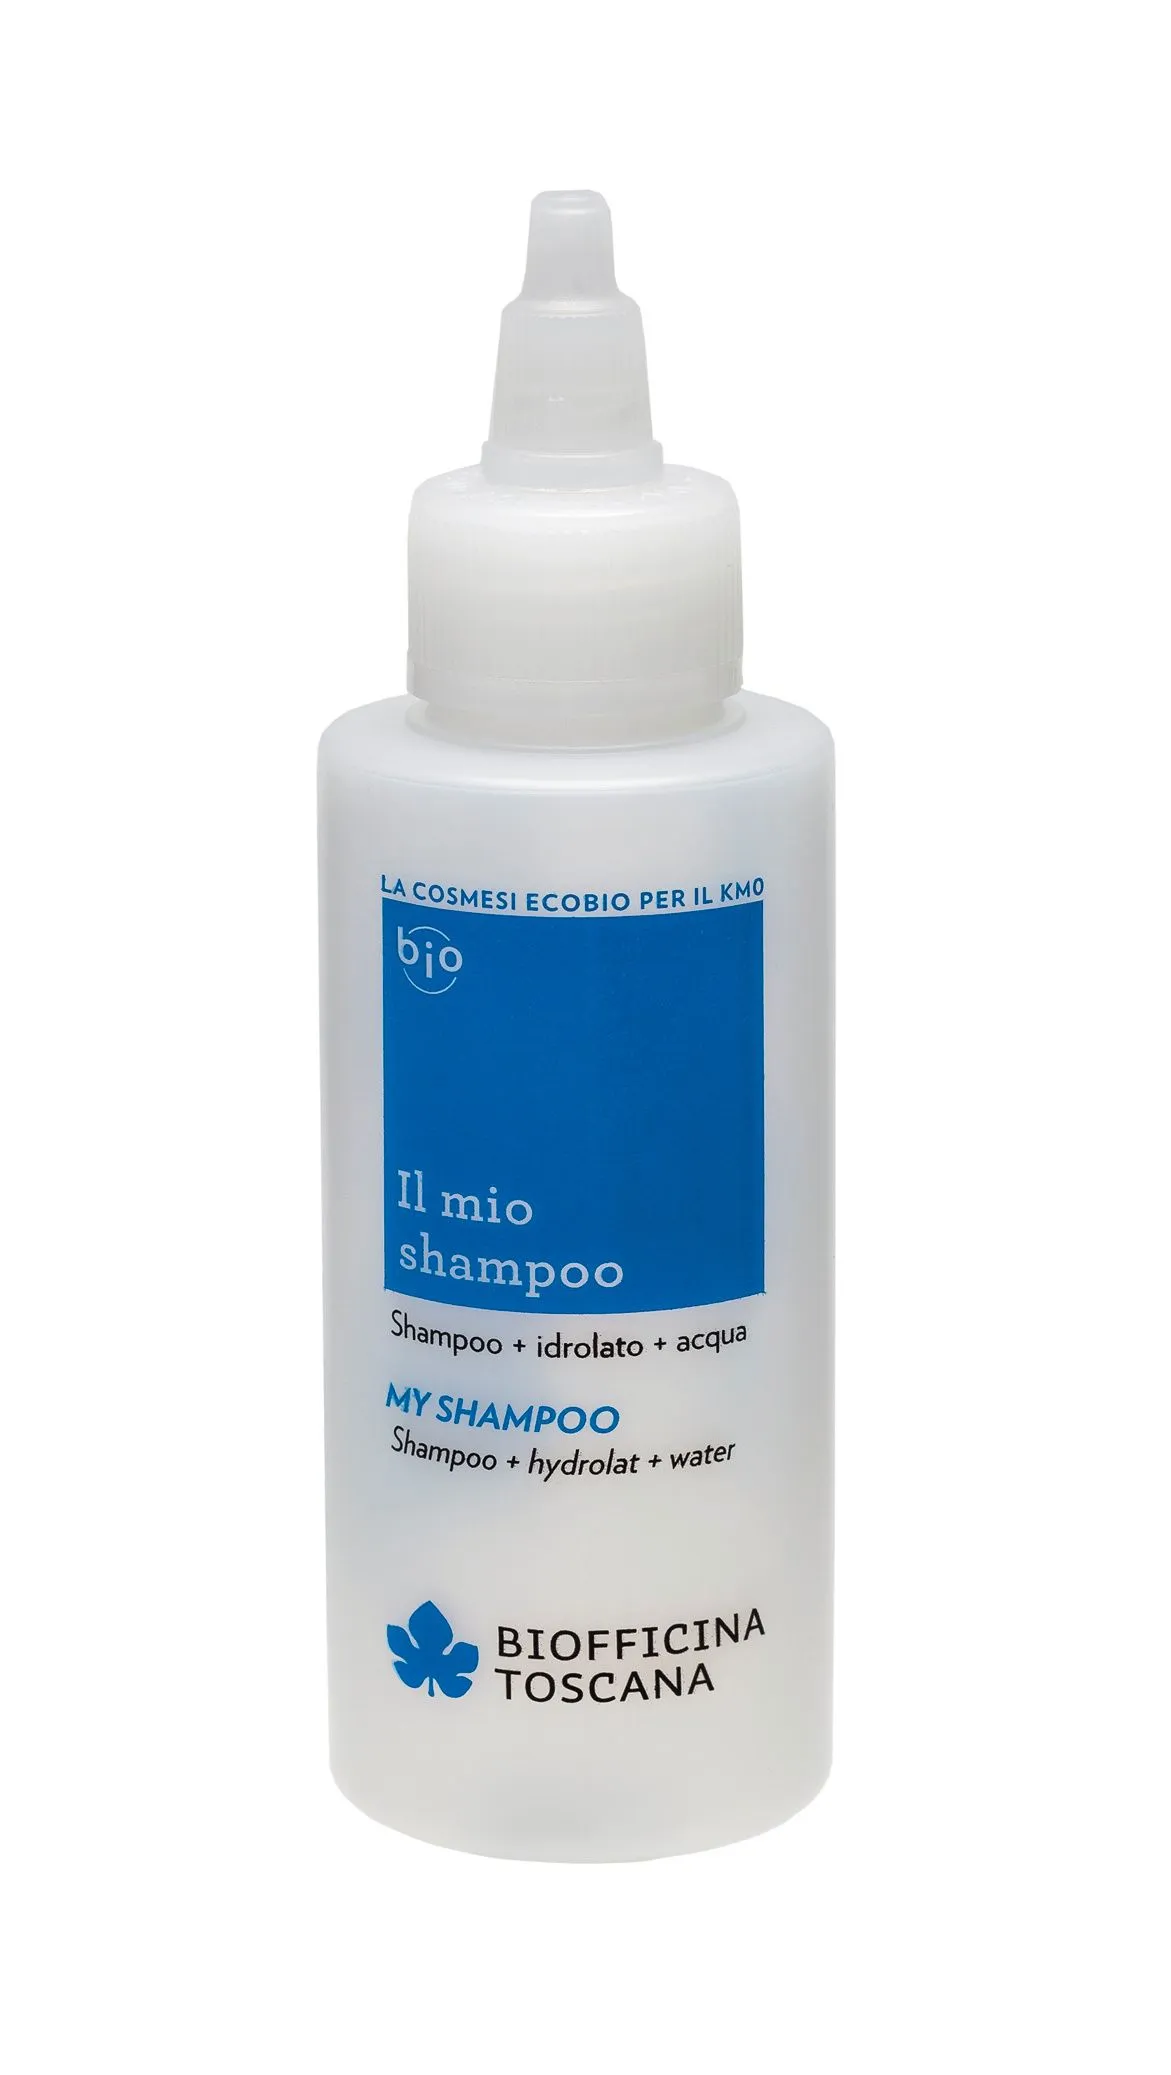 Biofficina Toscana My shampoo Modrá lahvička pro přípravu vlastního šampónu 100 ml